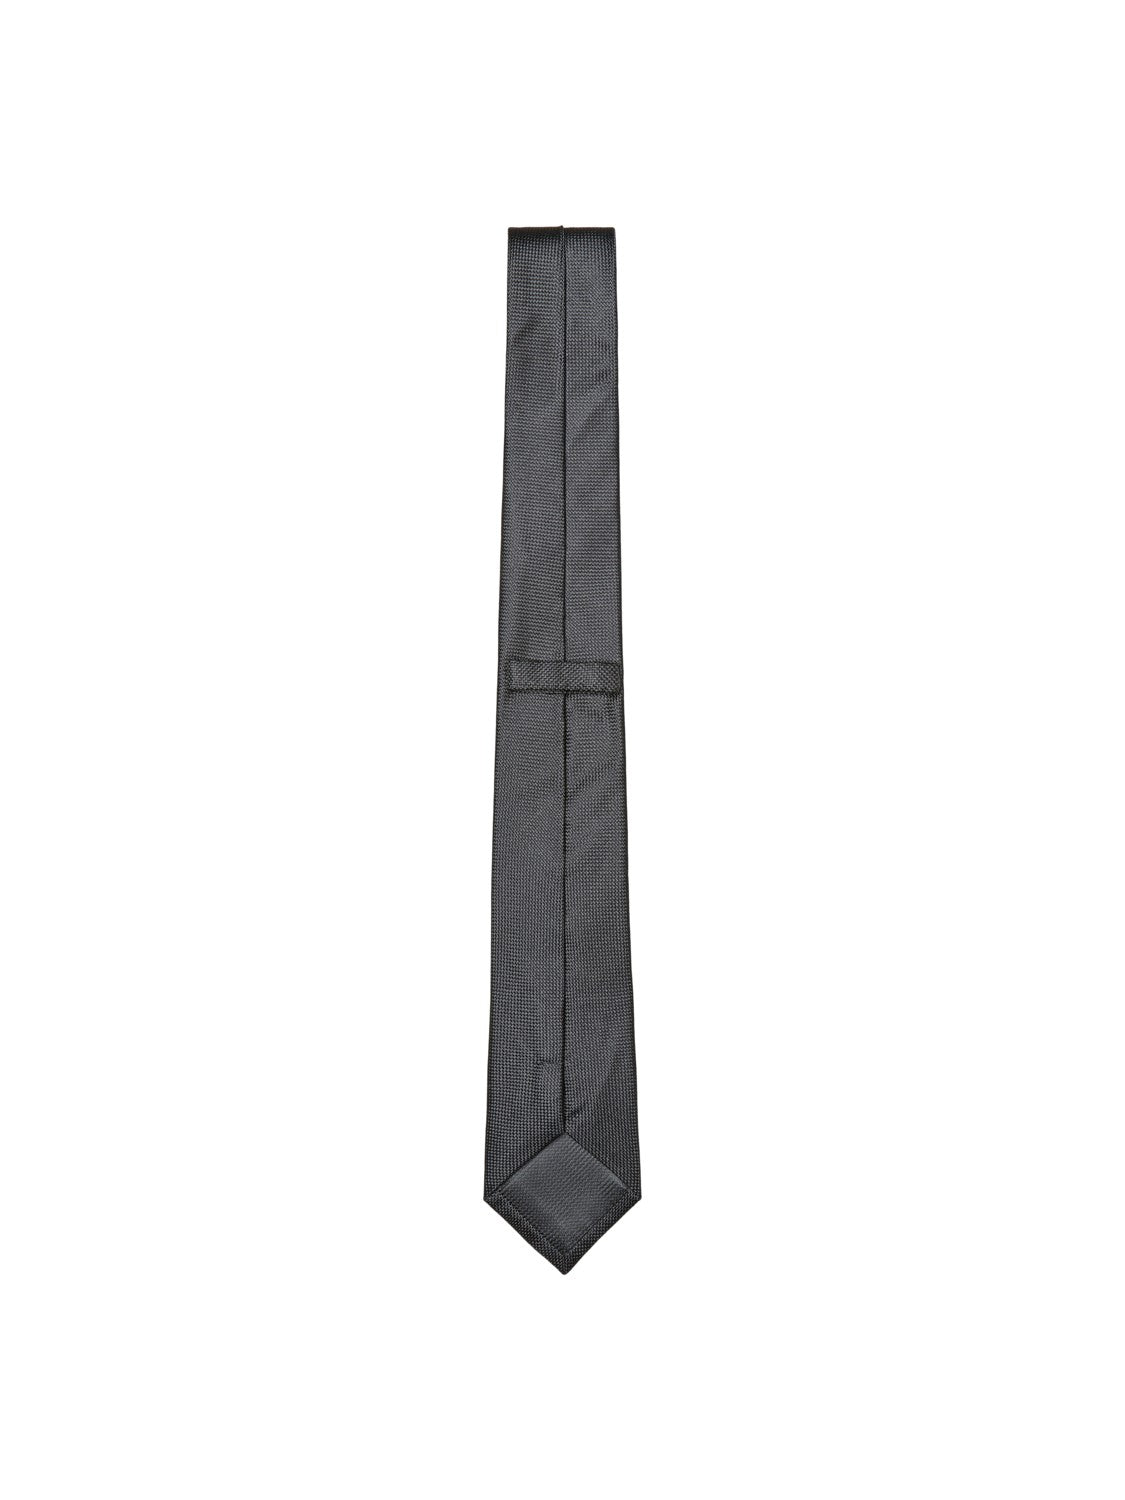 New Texture Tie 7cm Black